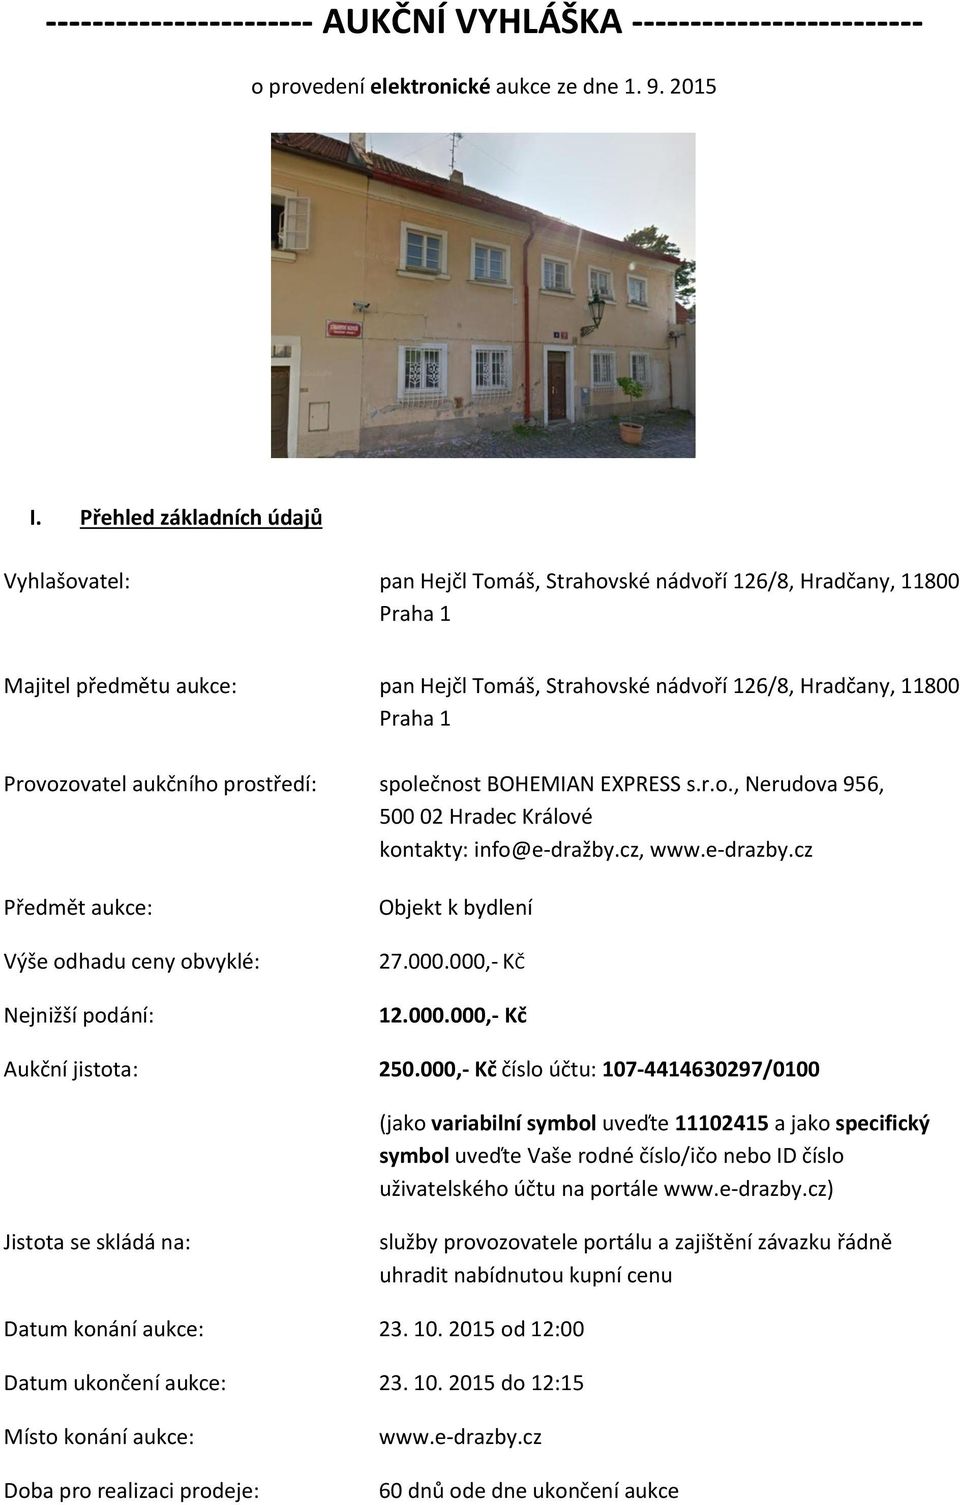 Provozovatel aukčního prostředí: společnost BOHEMIAN EXPRESS s.r.o., Nerudova 956, 500 02 Hradec Králové kontakty: info@e-dražby.cz, www.e-drazby.